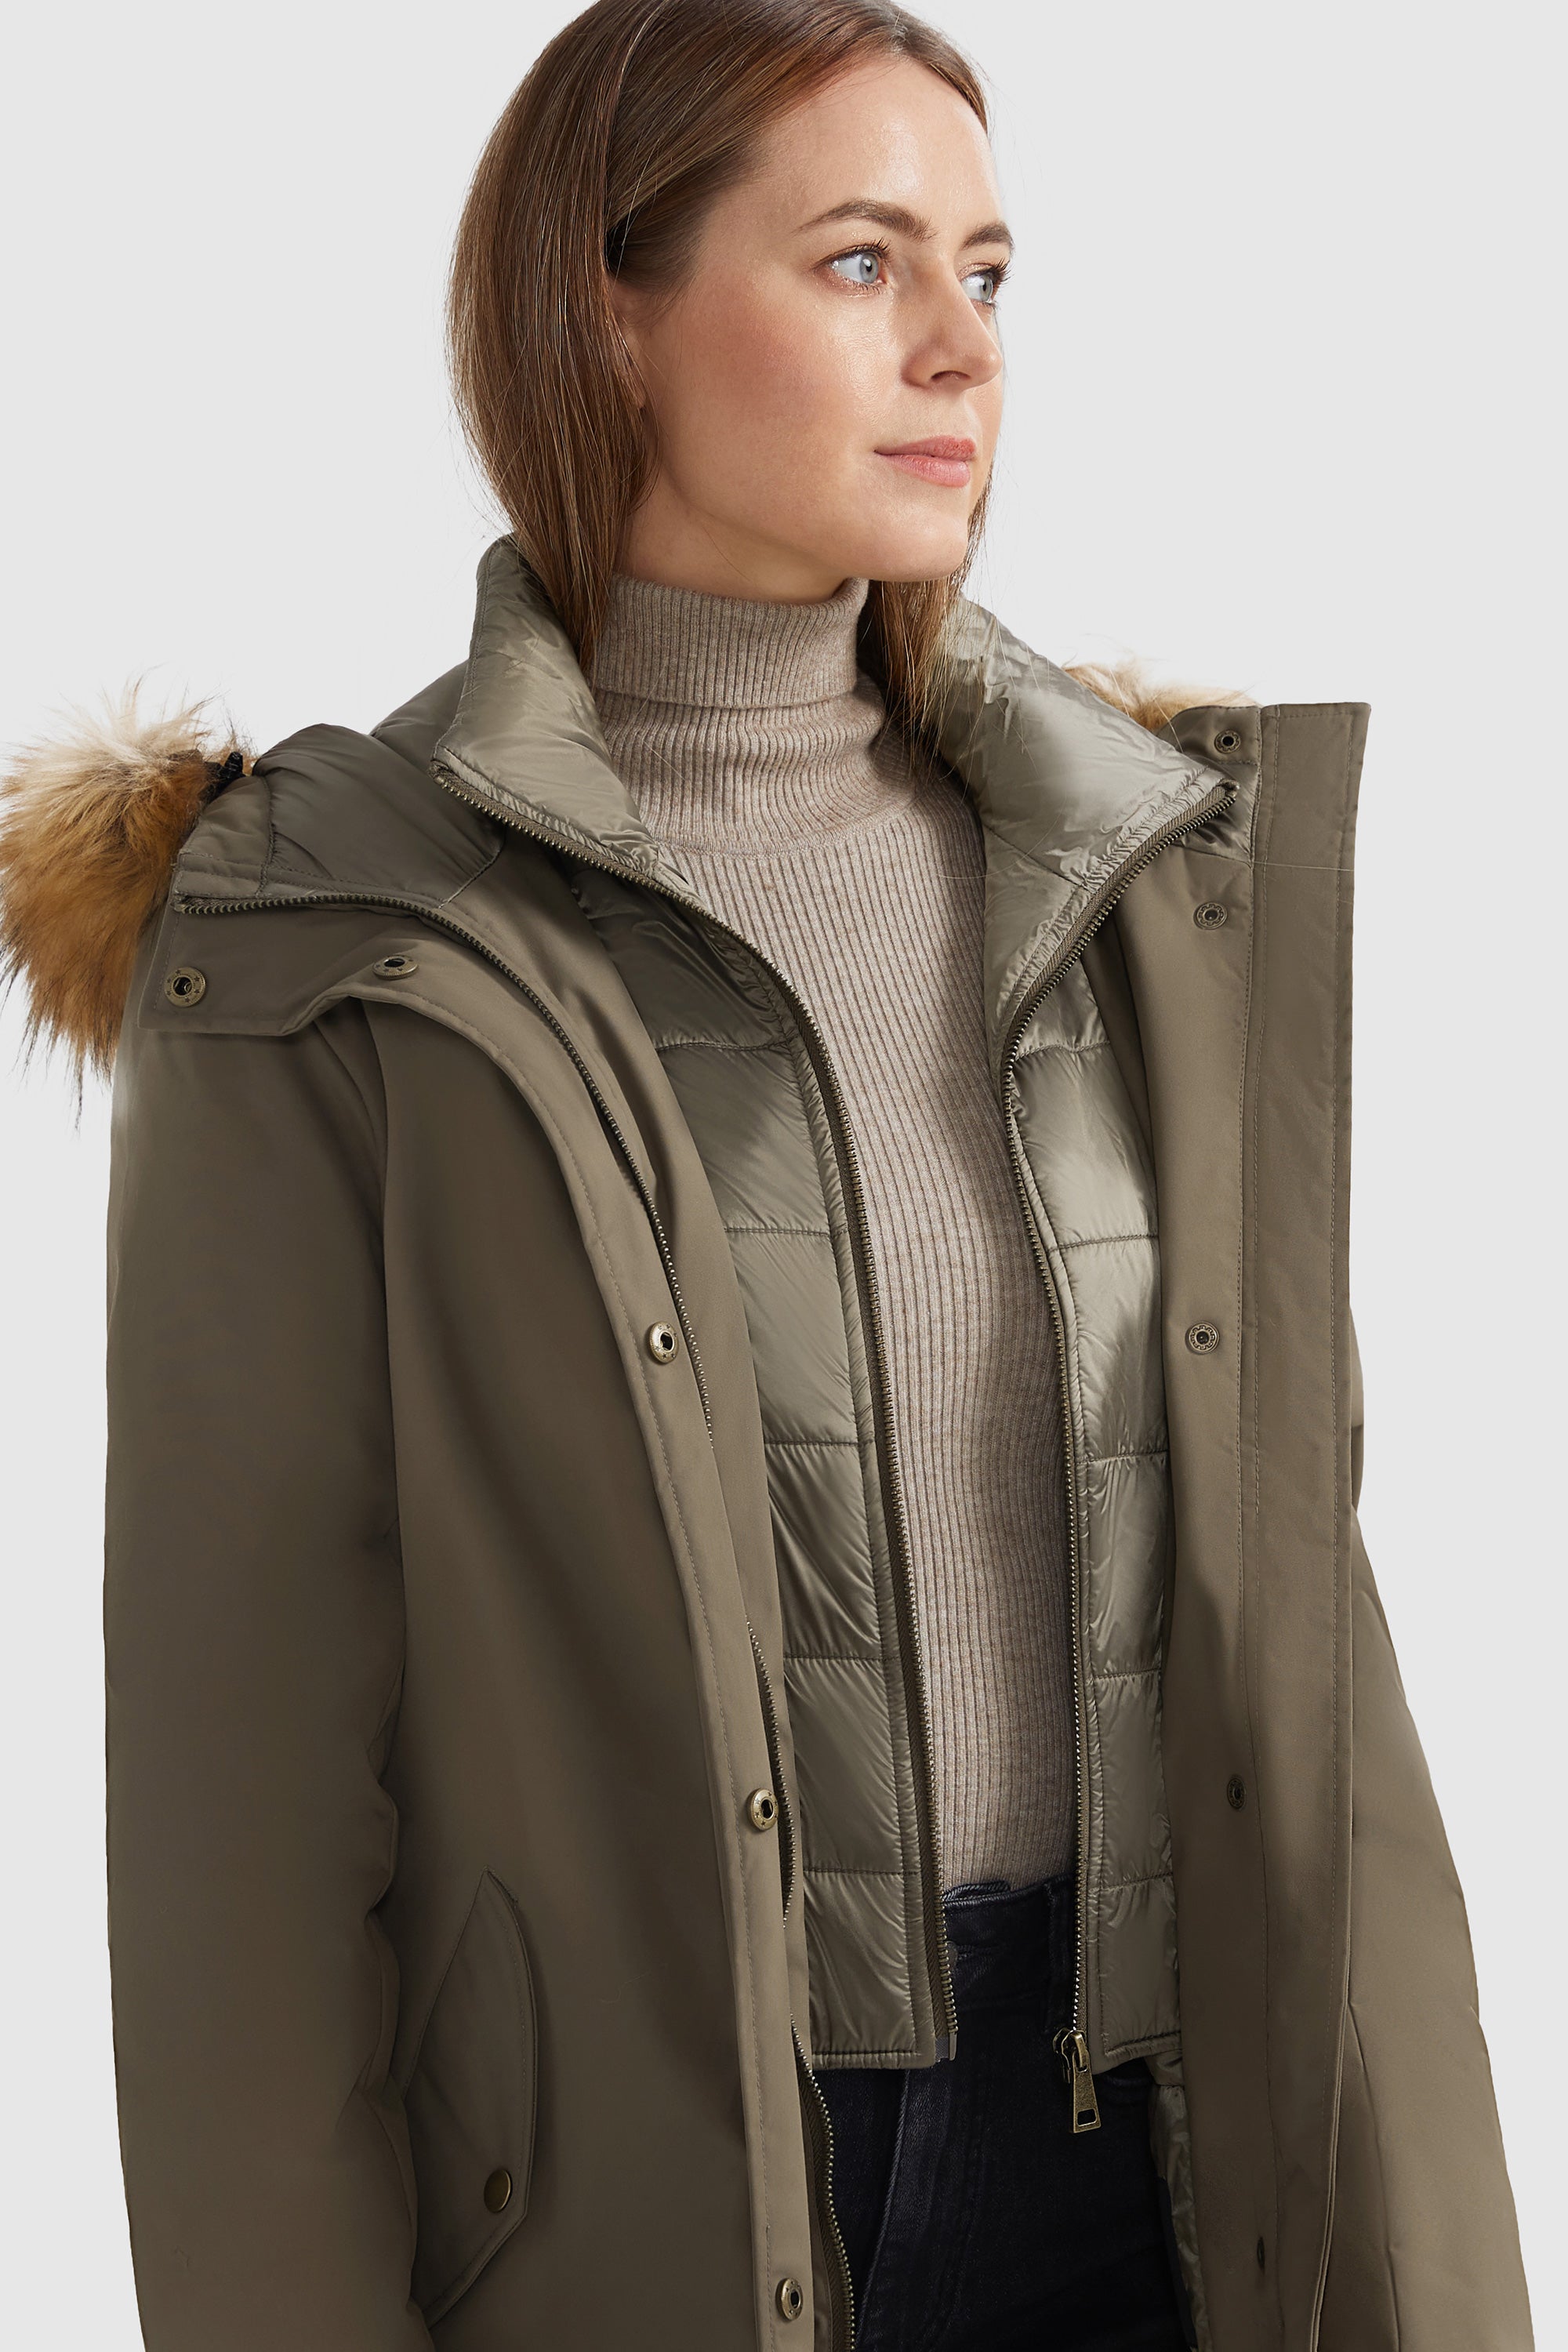 Winter Parka Jacket with Adjustable Belt